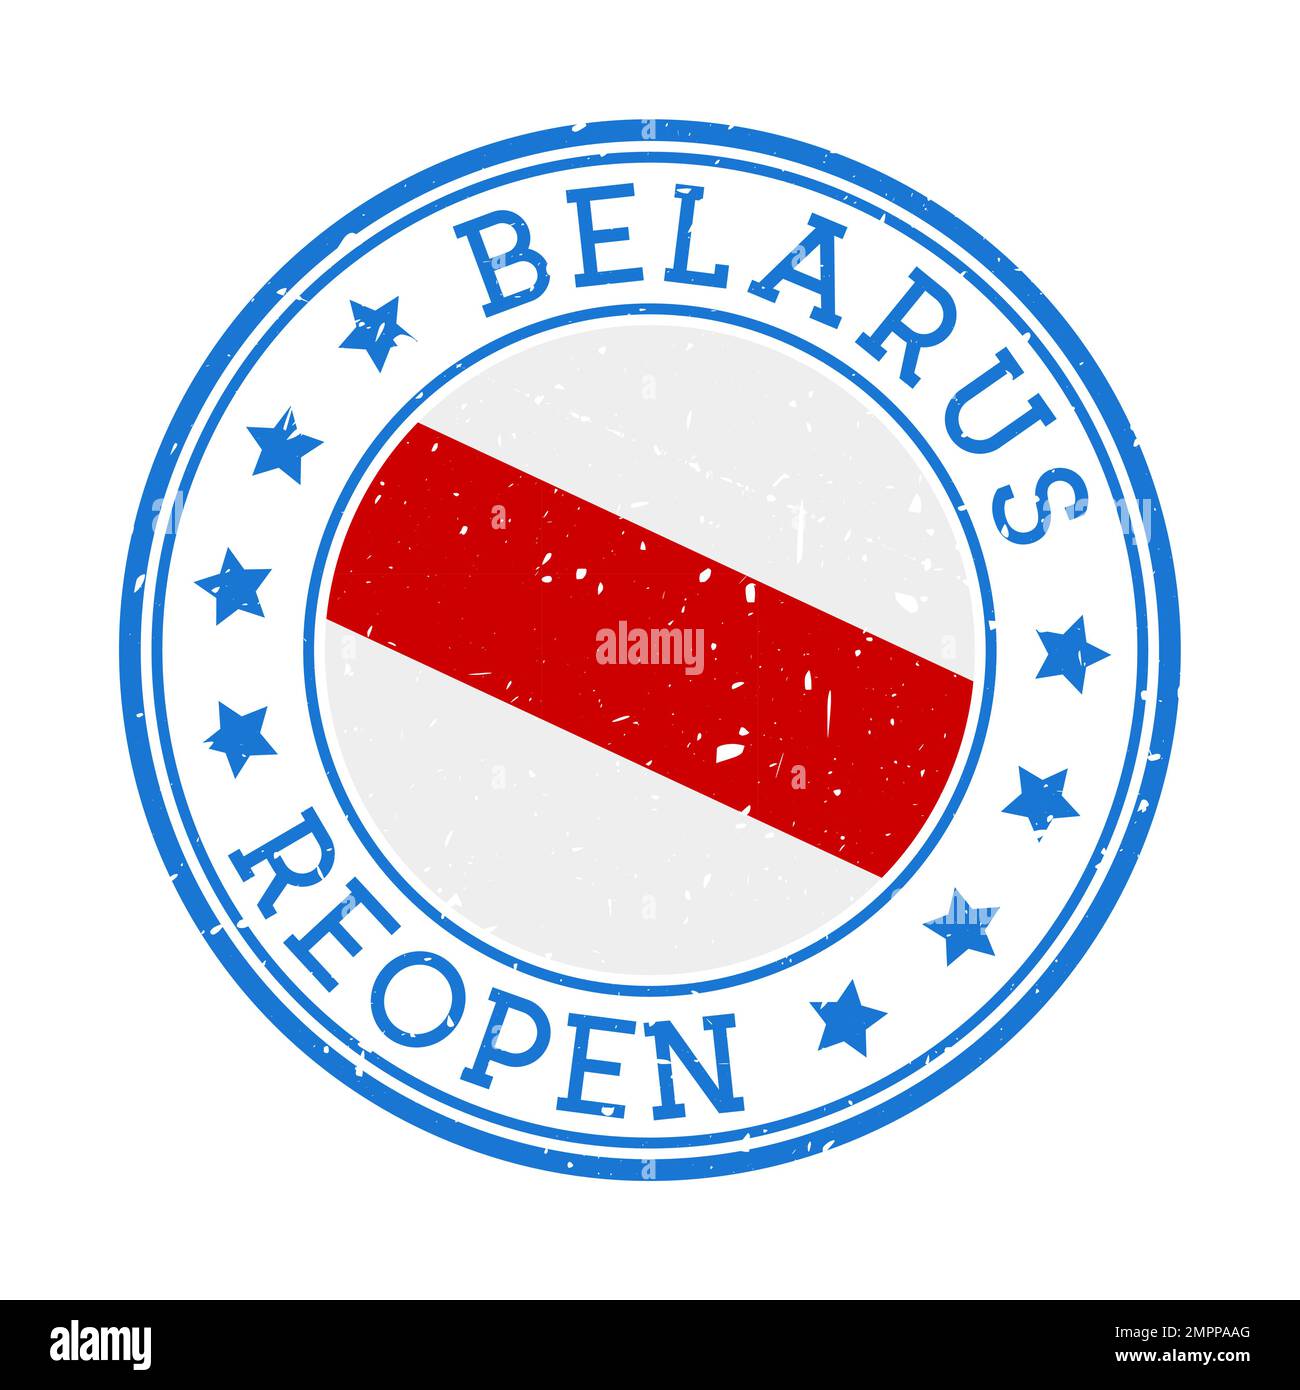 Belarussische Wiedereröffnungsmarke. Rundes Abzeichen des Landes mit der früheren Flagge von Belarus (Symbol des Protests, derzeit von den Behörden verboten). Wir öffnen uns wieder Stock Vektor